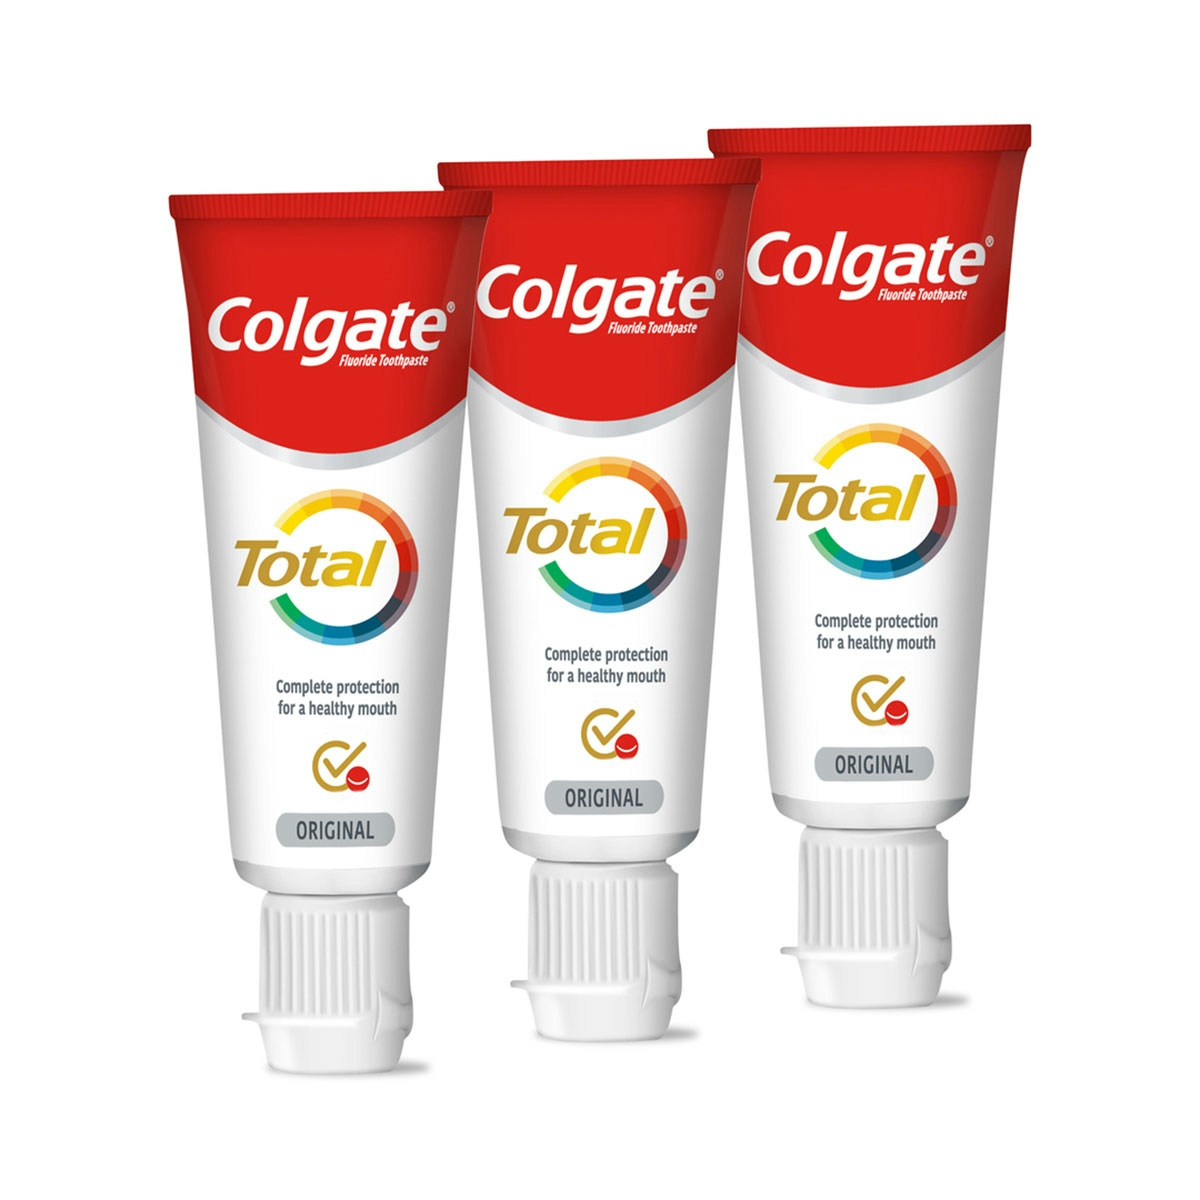 Pasta de dientes Colgate Total Original 24h de protección completa, kit de viaje 3x20ml